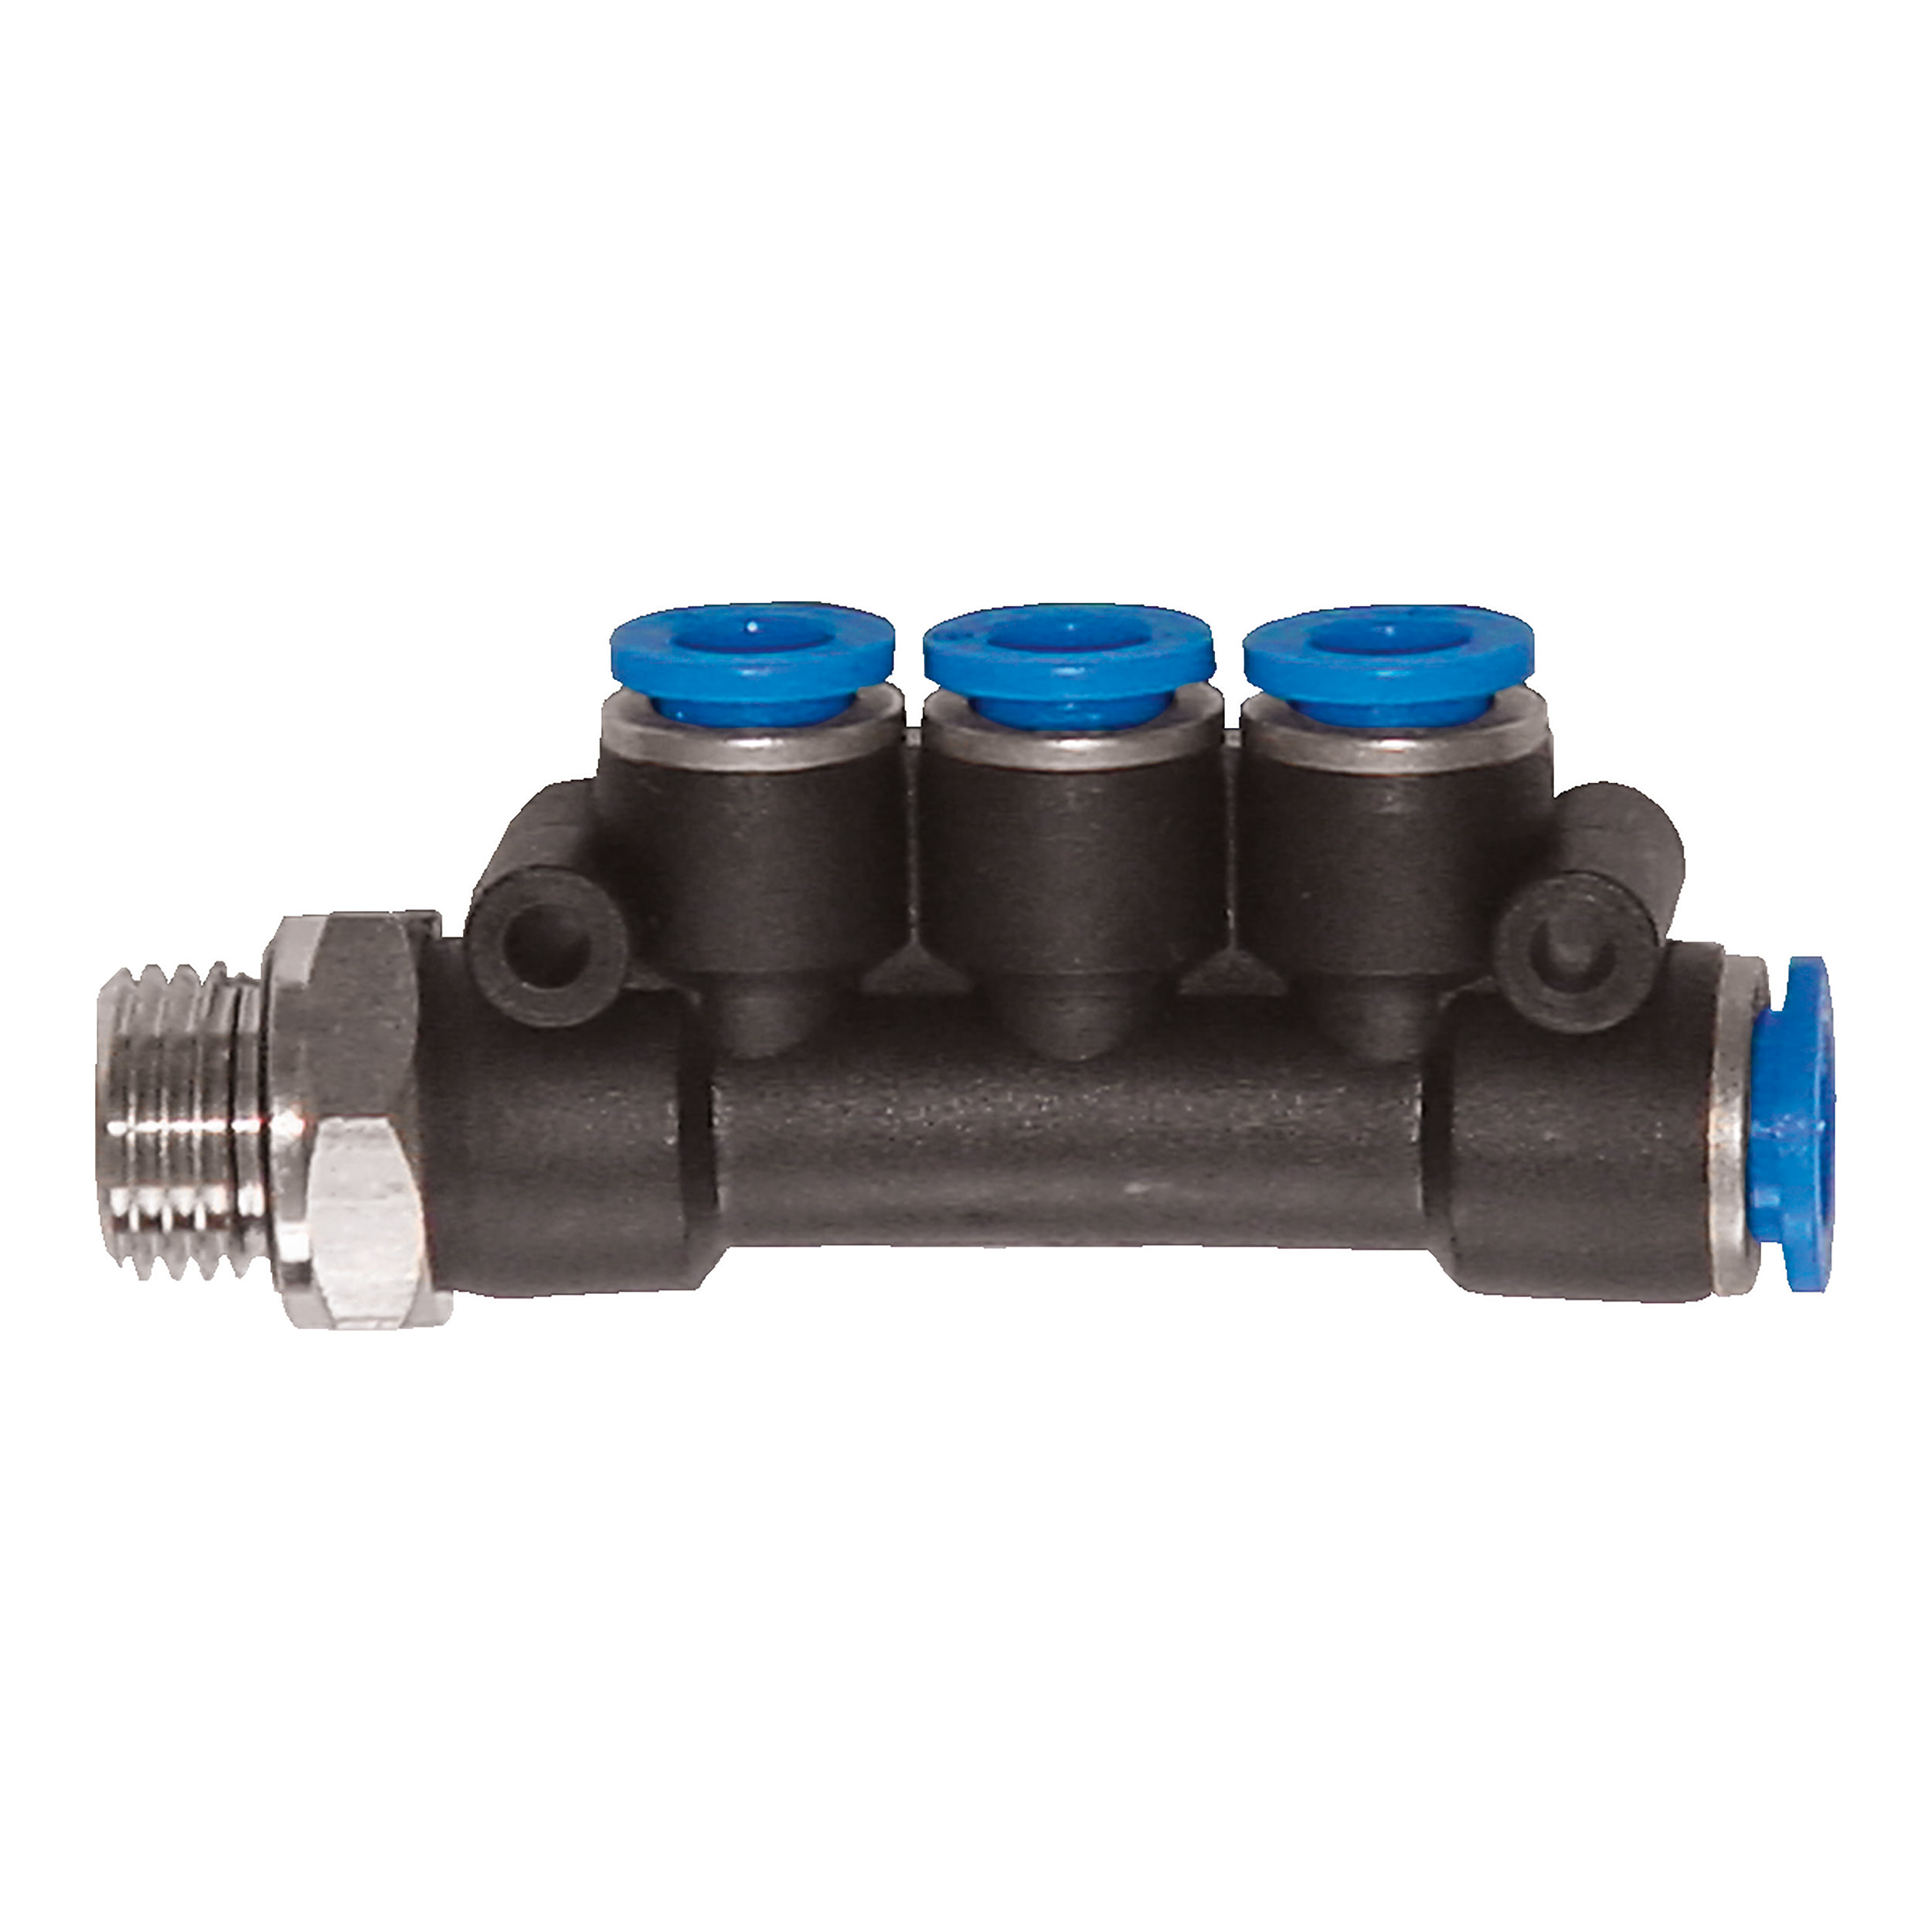 T-multipoint distributor, G⅛ male, hose-Ø: 1 × D1: 6 mm, 3 × D2: 4 mm; B(L): 68 mm, Ød: 3 mm, AF 12 mm, three reduced outlets